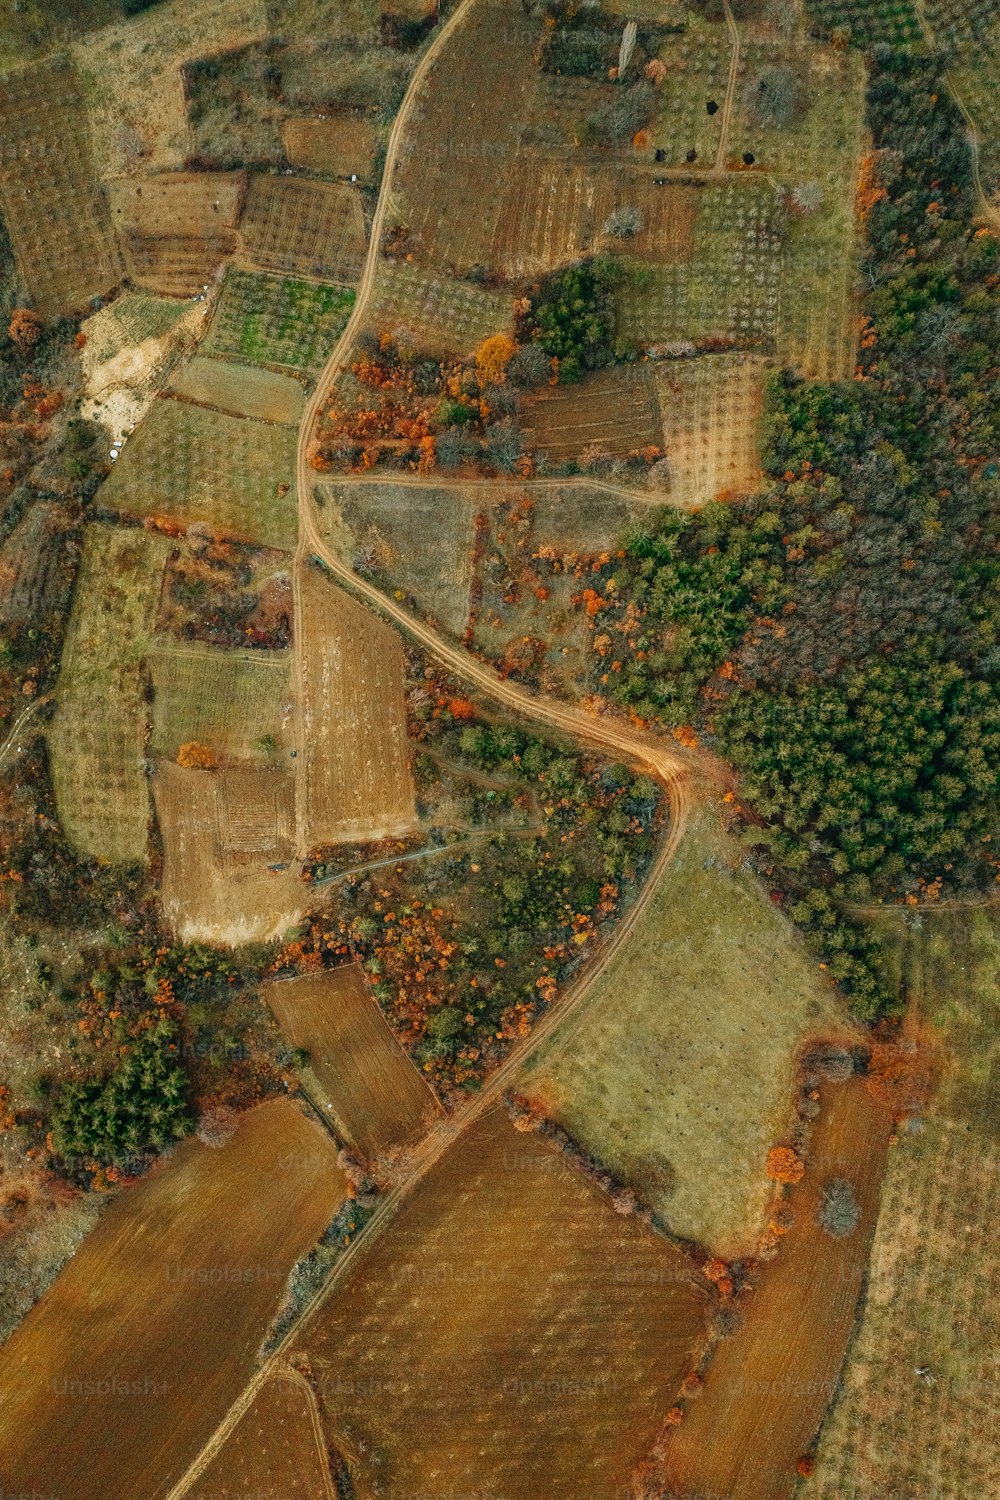 une vue aérienne d’une zone rurale avec beaucoup d’arbres